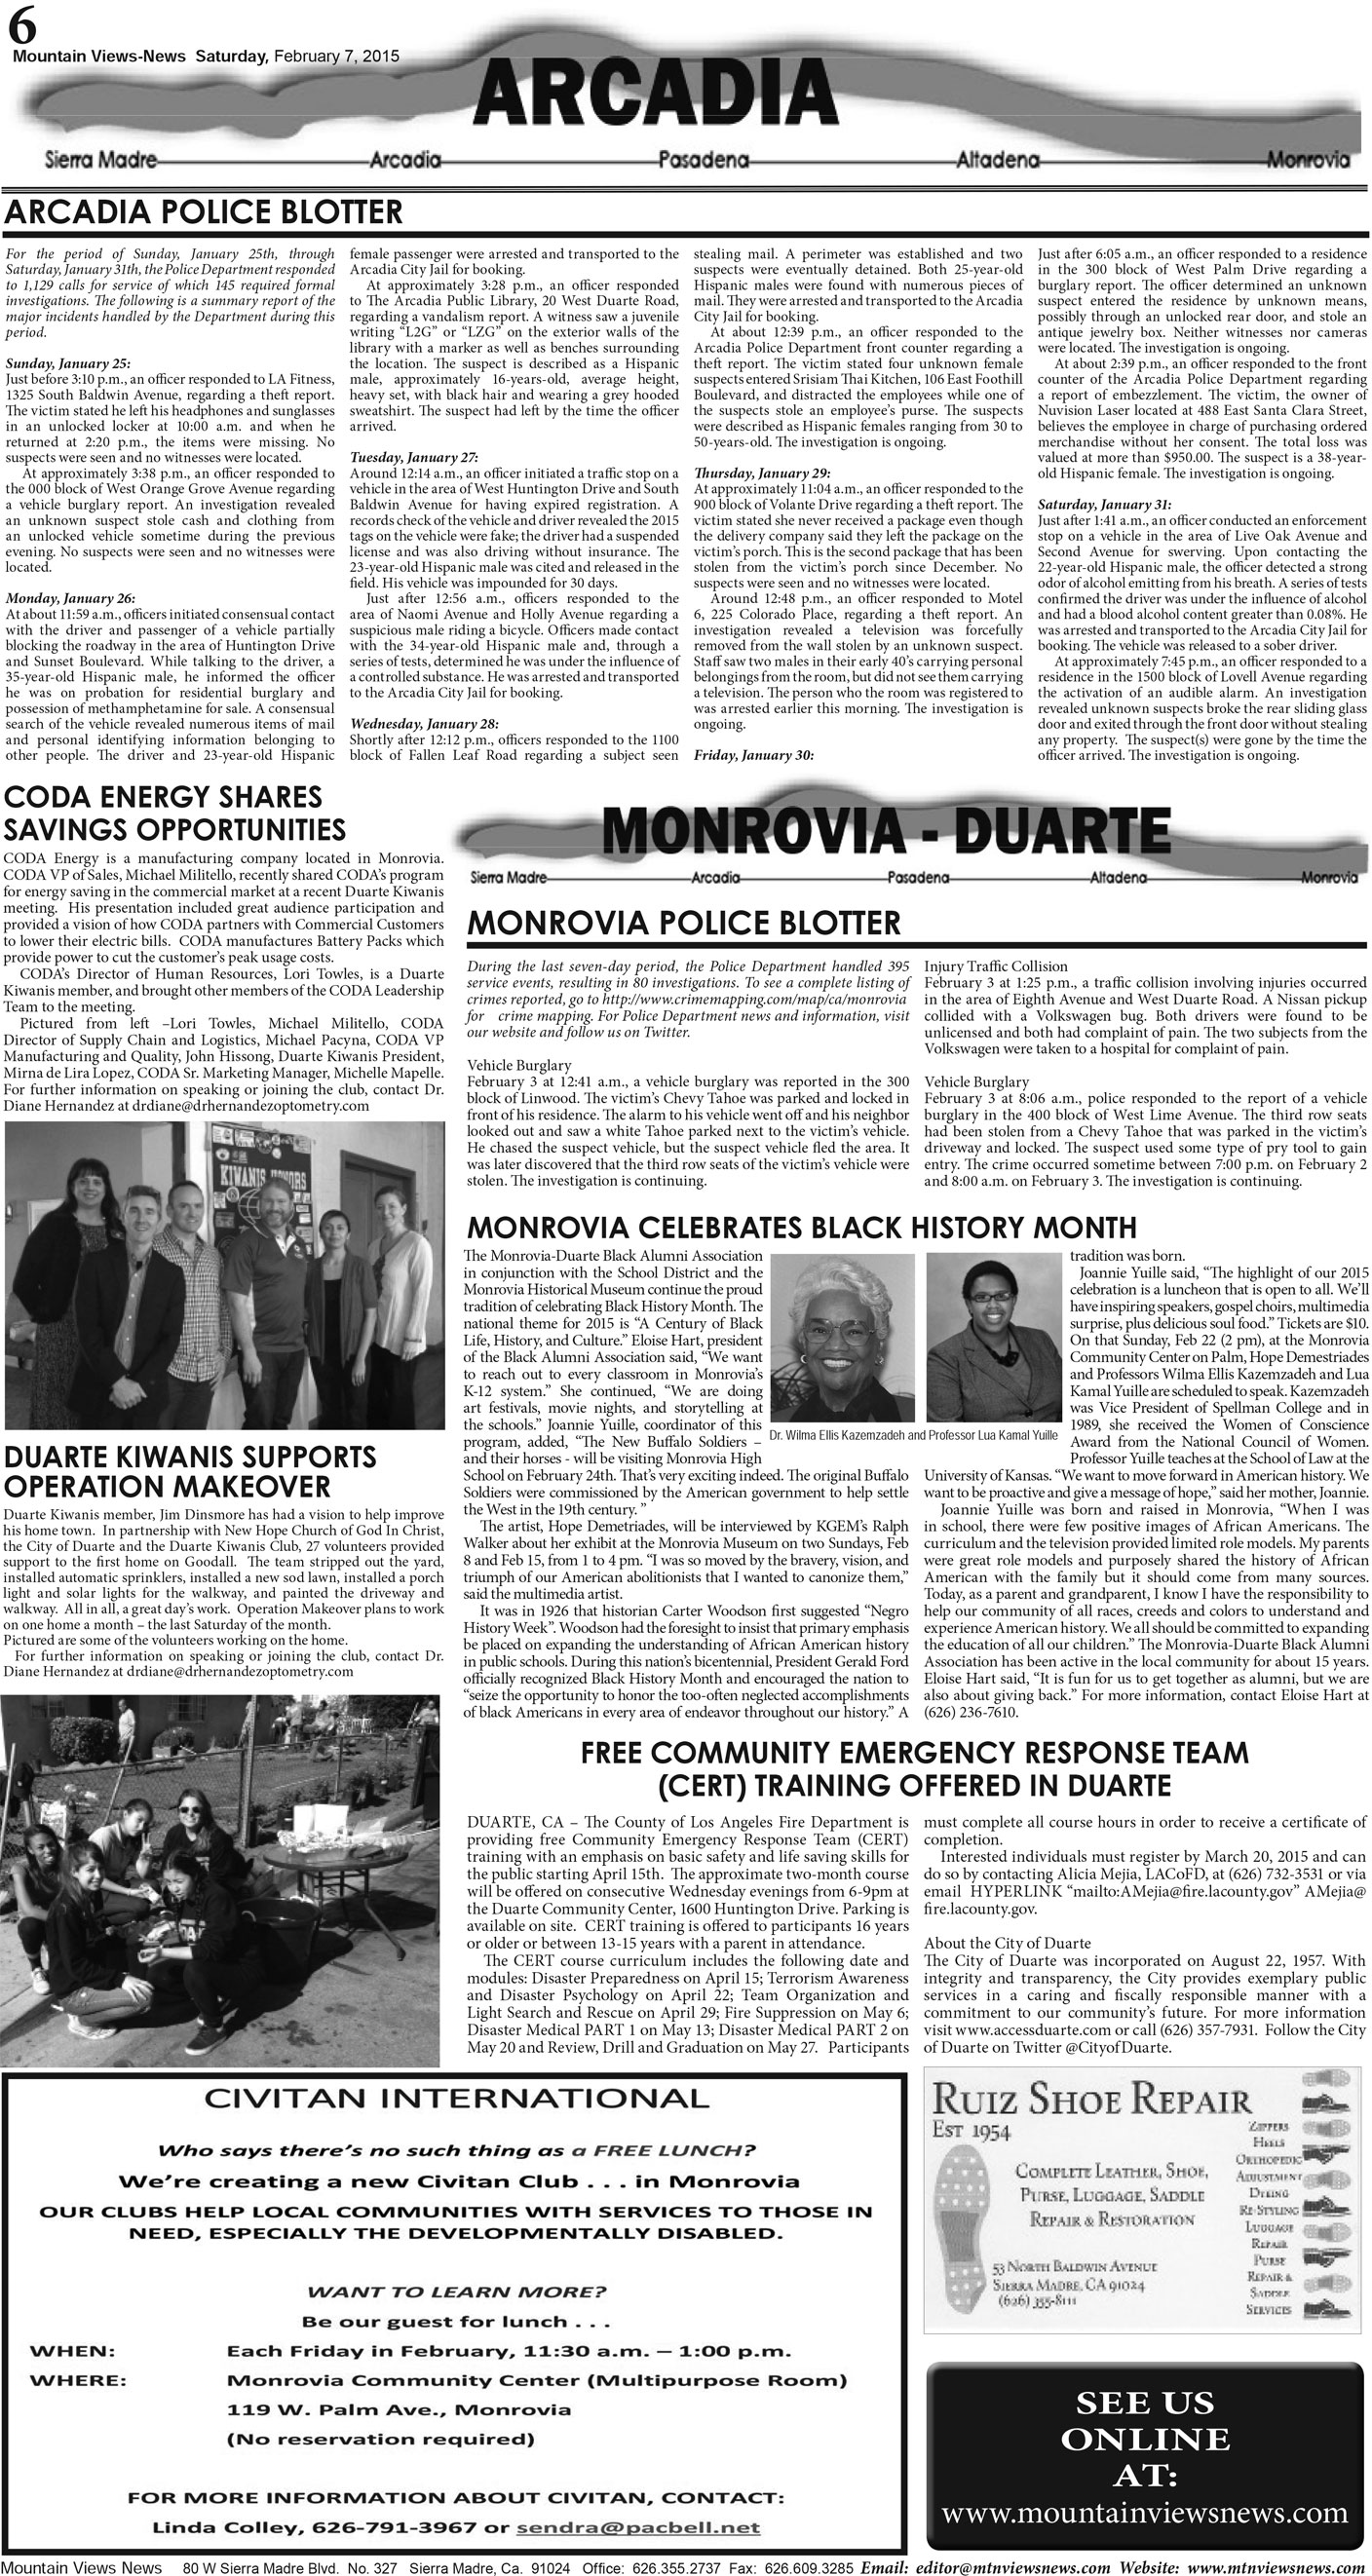 MVNews this week:  Page 6